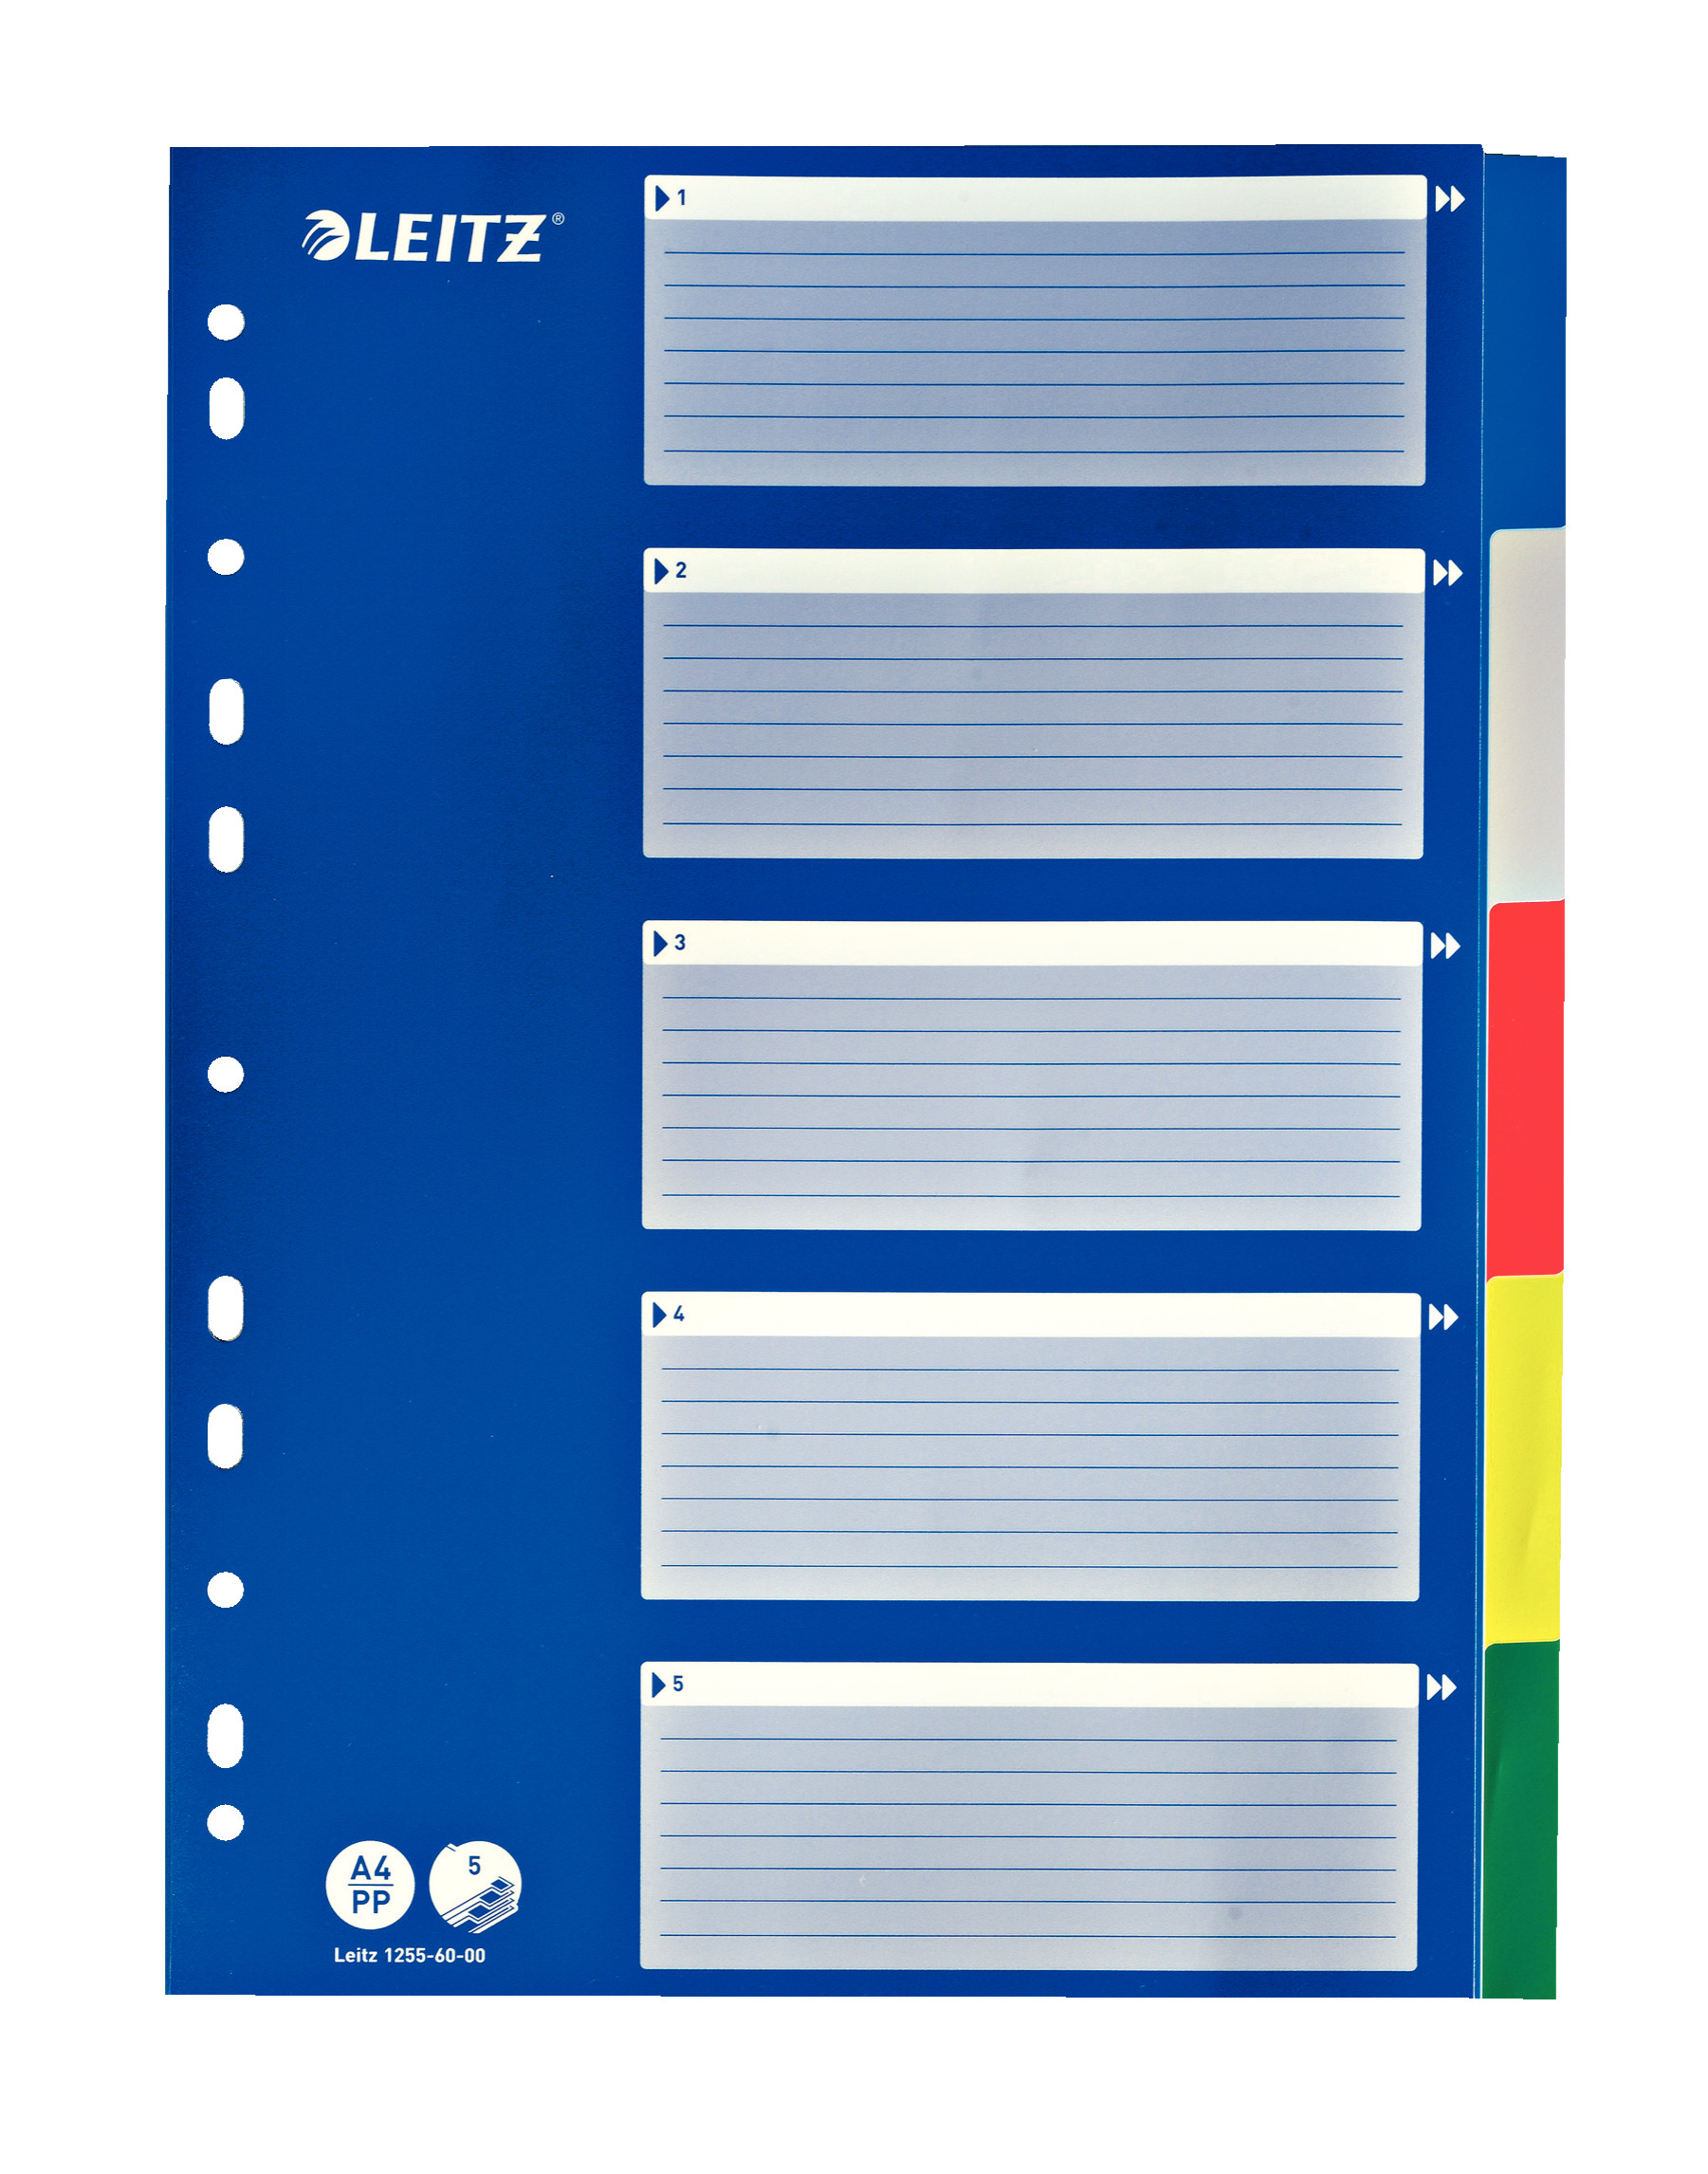 Leitz A4 5 Separadors Arxivador Multicolor, Pestanyes de Plàstic Resistent amb Caràtula d'Índex, 12.556.000